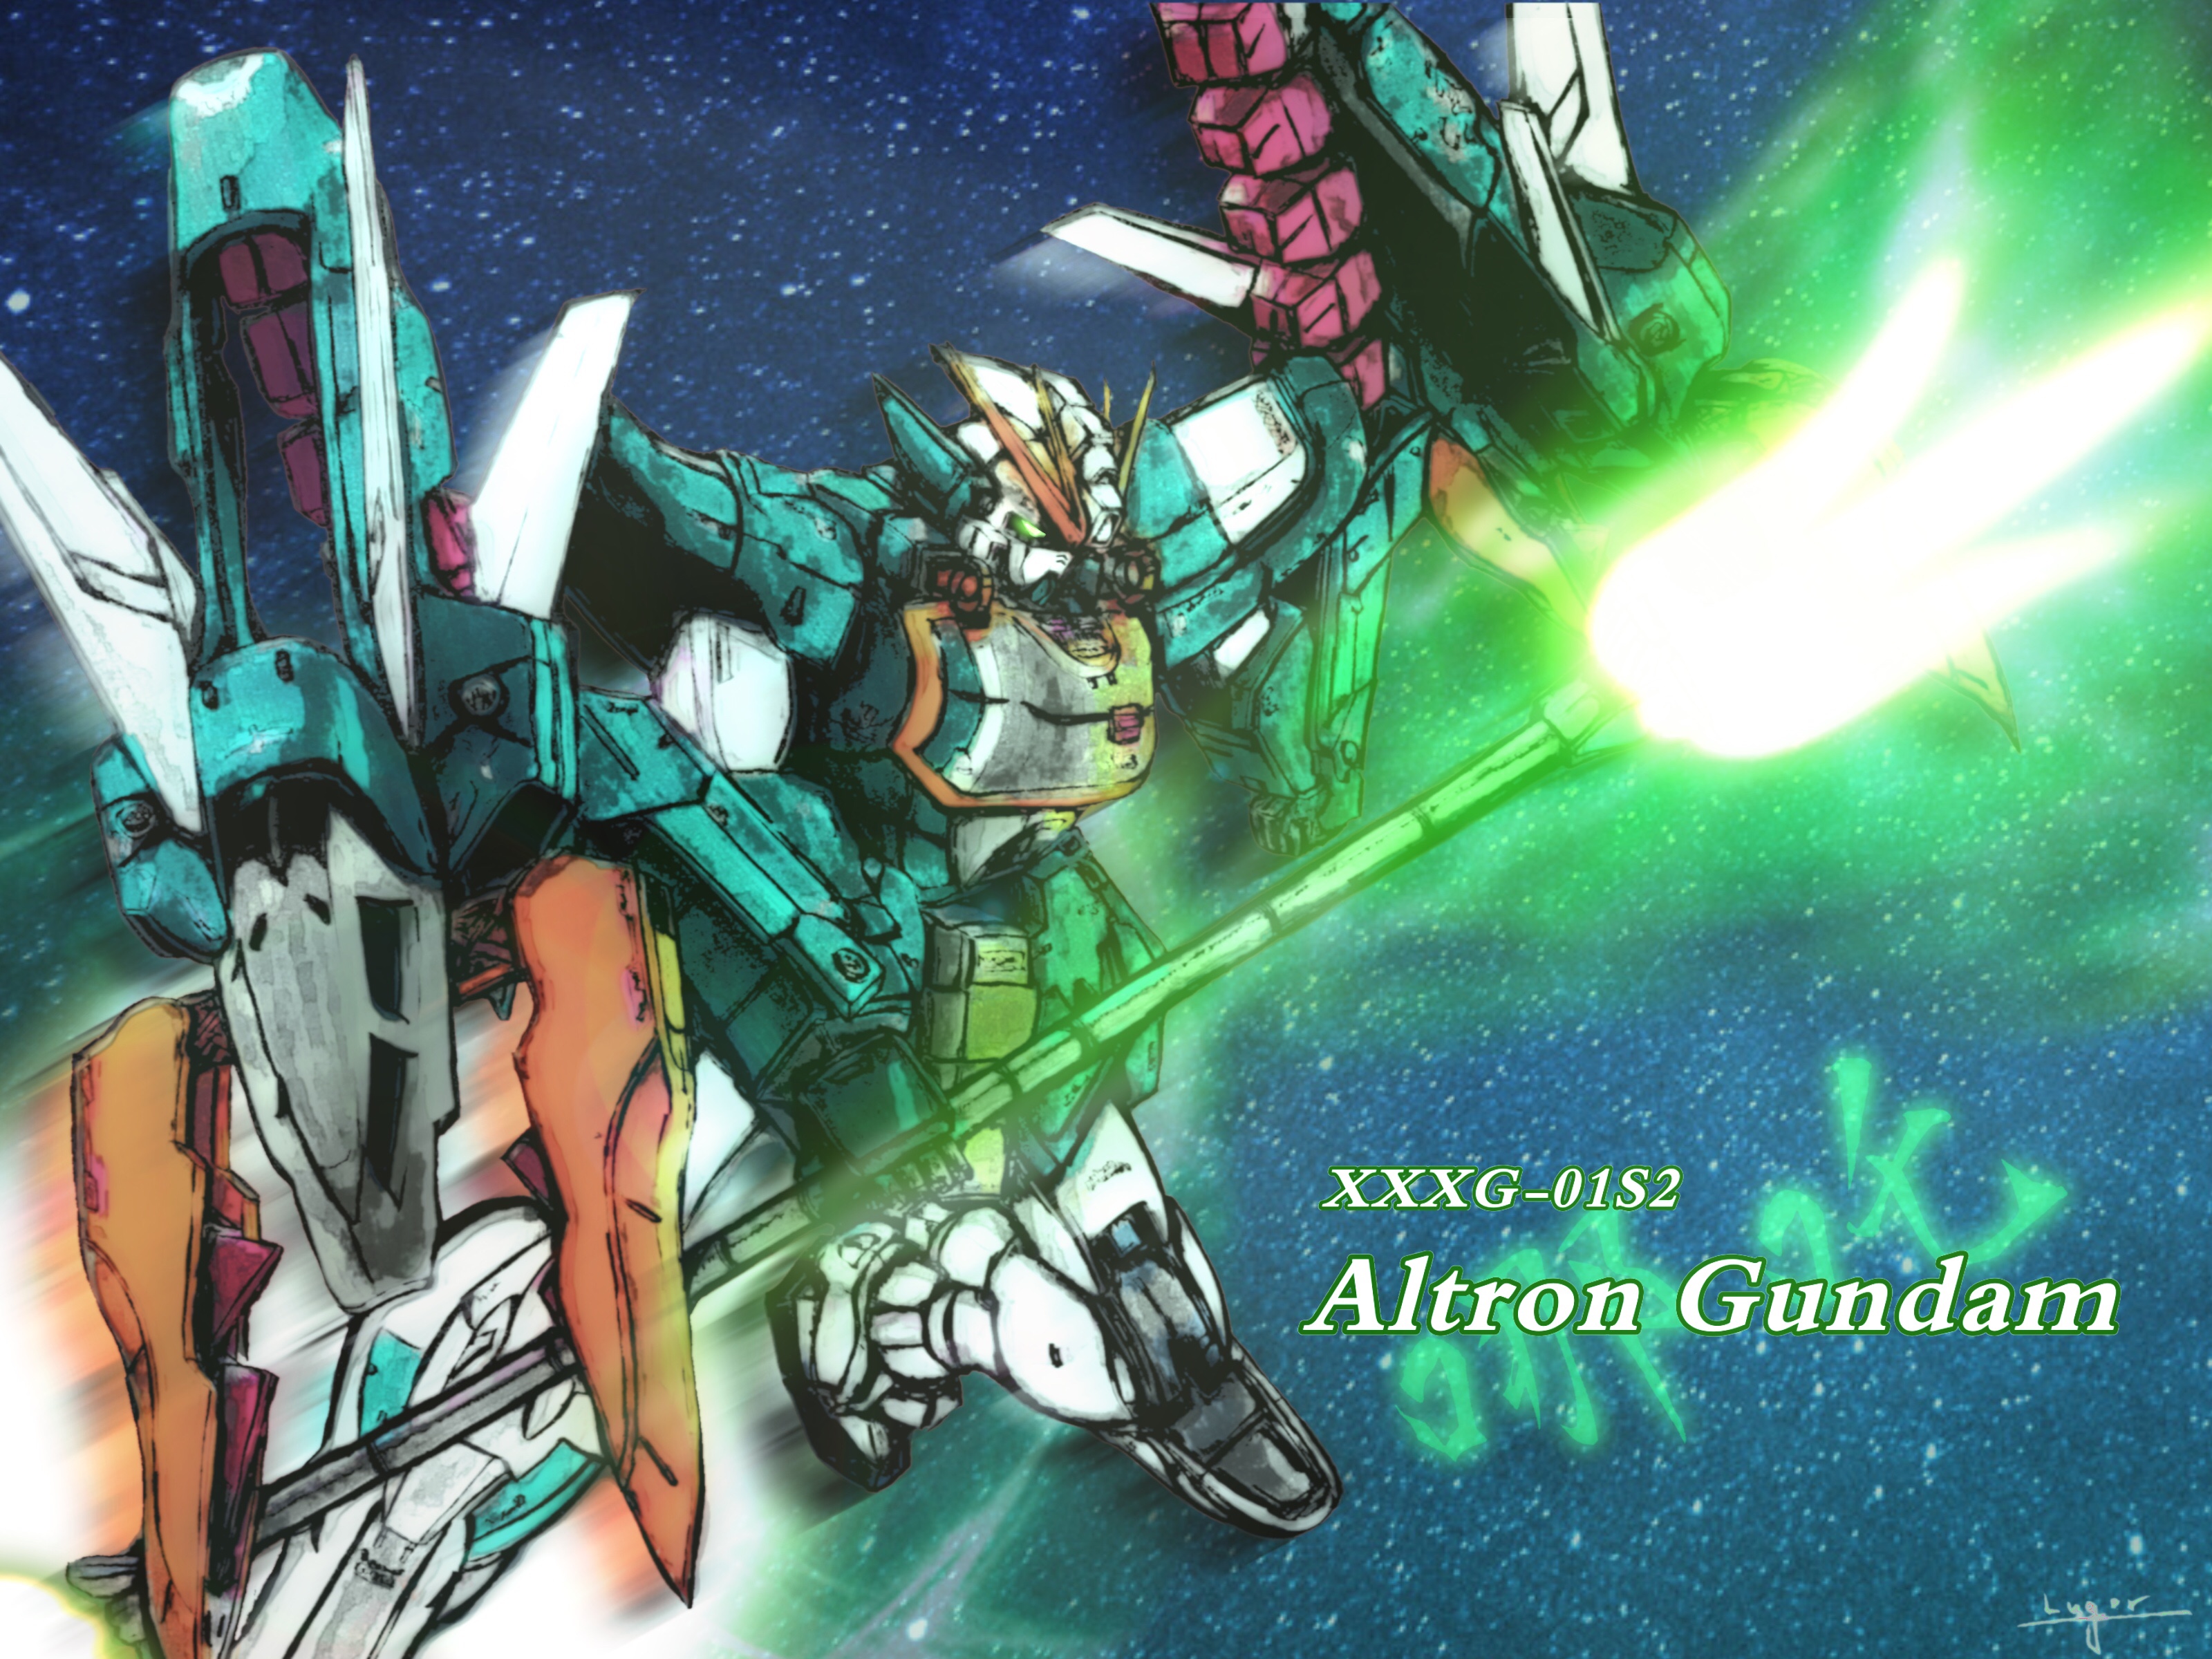 Anime Mechs Super Robot Taisen Gundam Mobile Suit Gundam Wing Altron Gundam Artwork Digital Art Fan  3200x2400